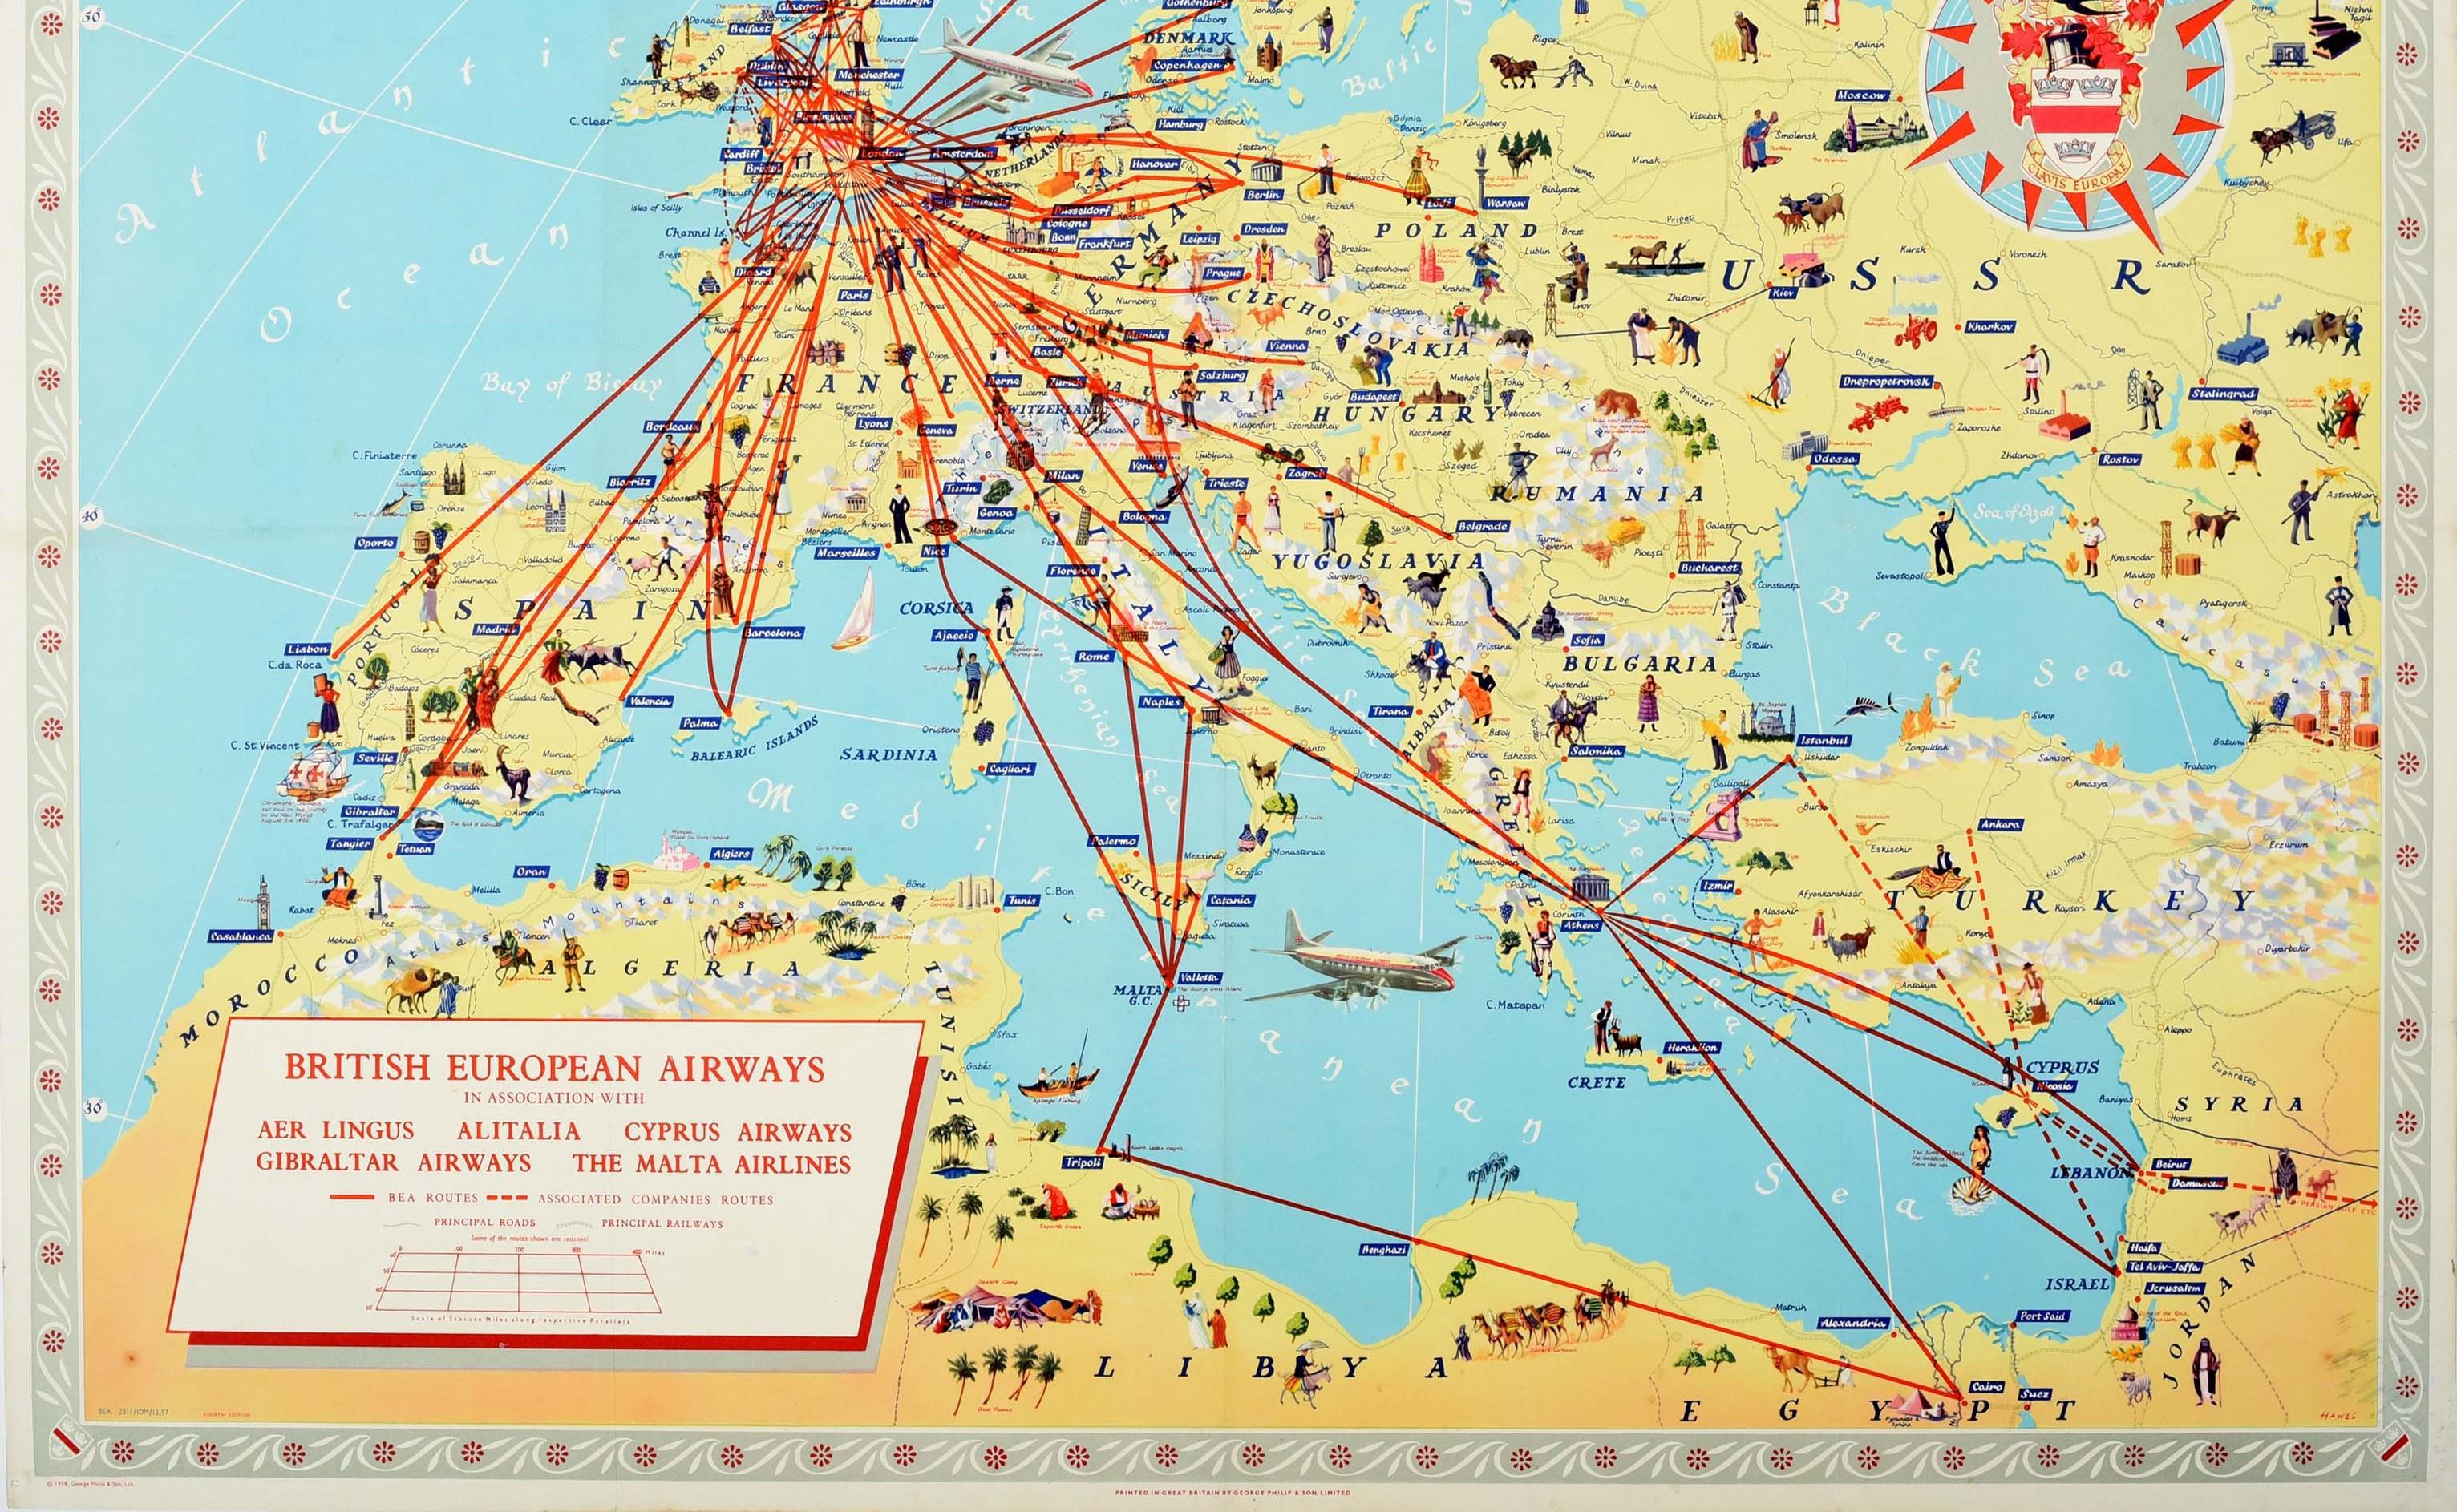 Originales Vintage-Reise-Werbeplakat für BEA British European Airways International Air Routes mit einer illustrierten Karte, die die Fluglinien und die damit verbundenen Verbindungen mit Aer Lingus Alitalia Cyprus Airways Gibraltar Airways und The